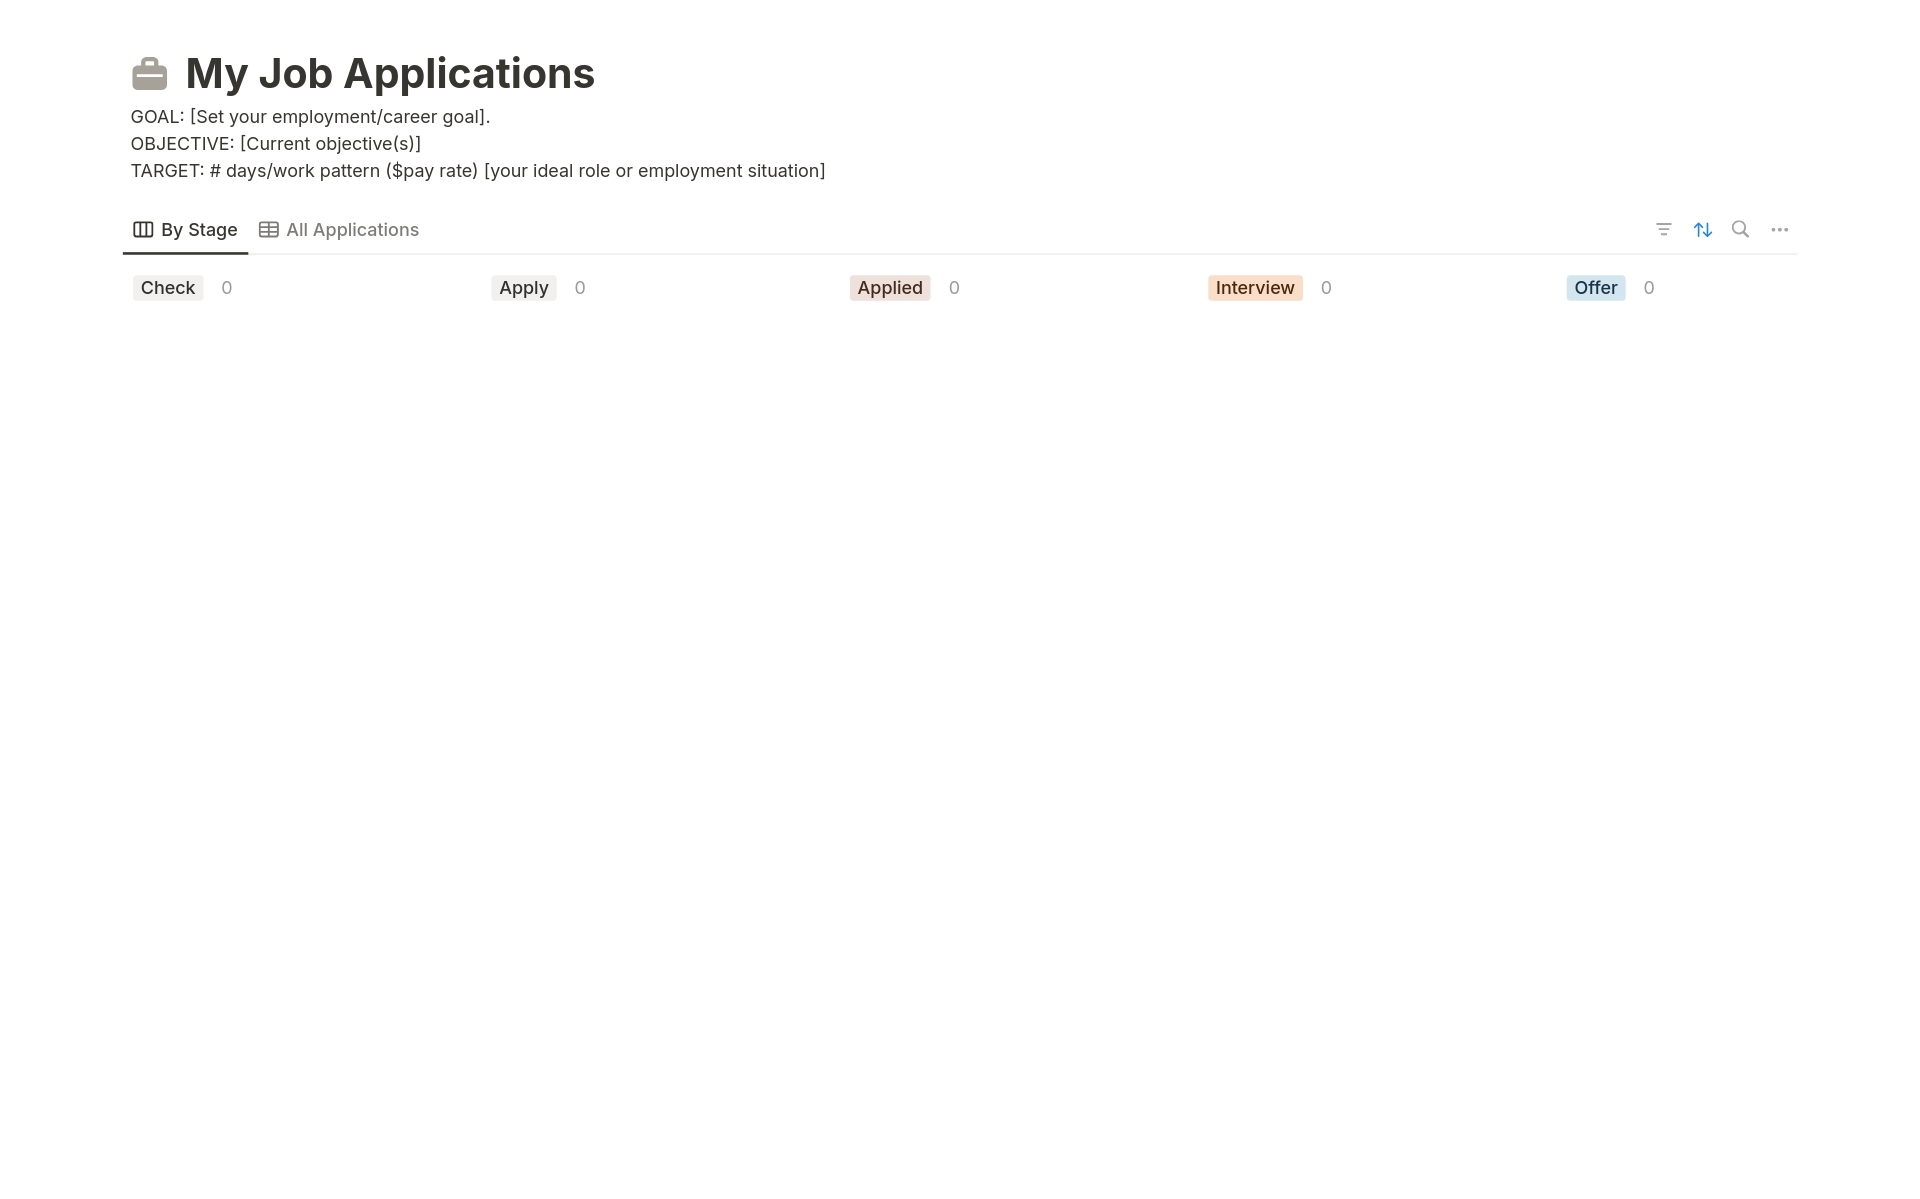 Vista previa de una plantilla para My Job Applications tracker